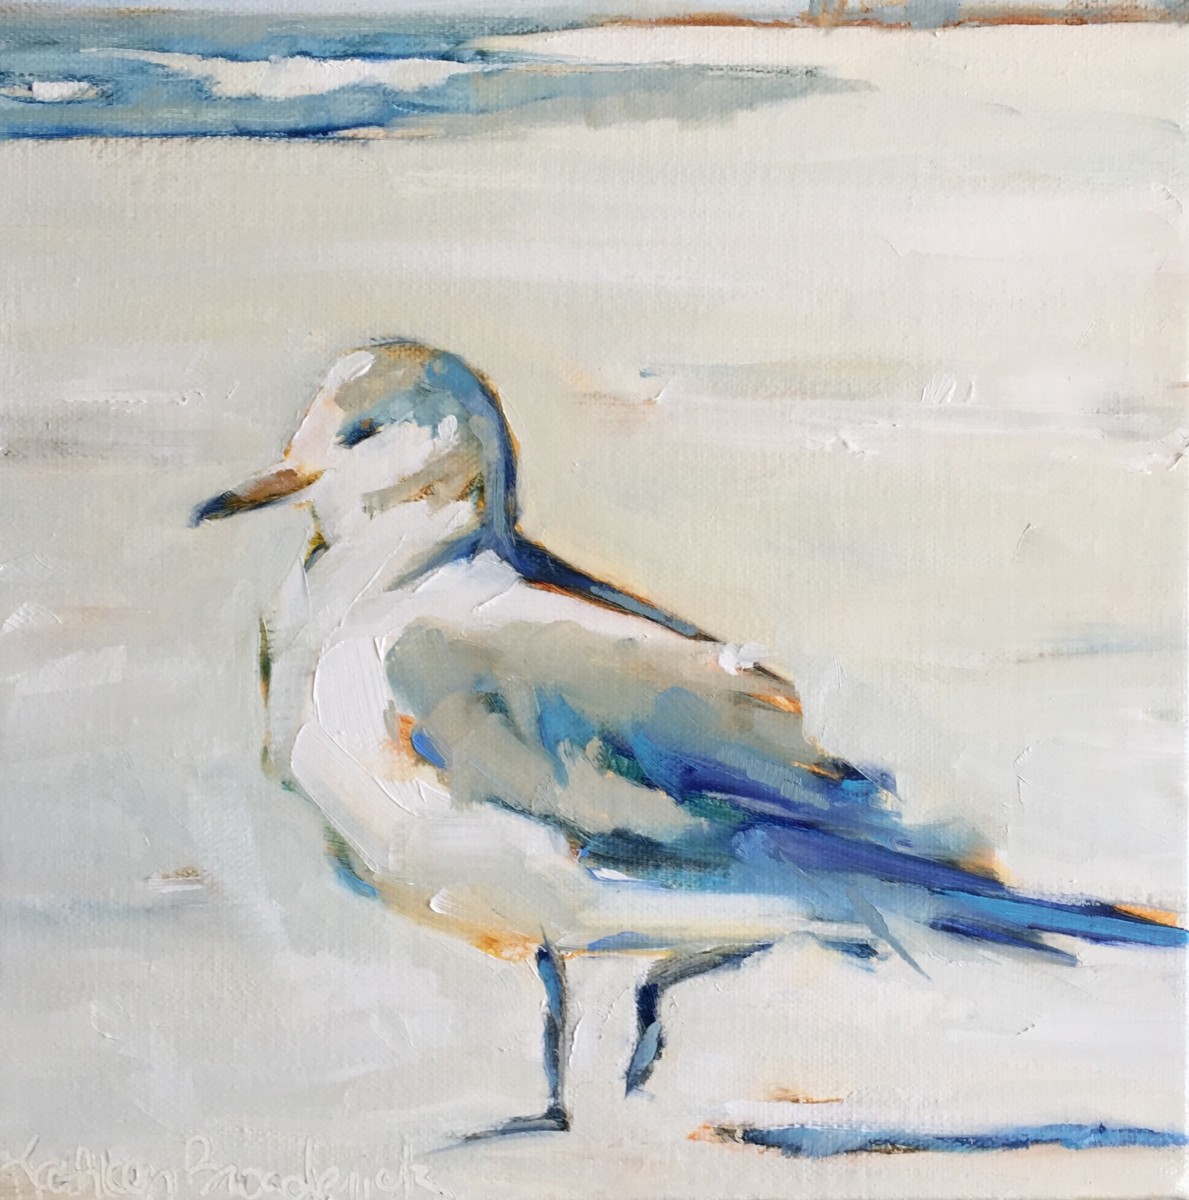 Blue Beach Bird by kathleen broaderick 